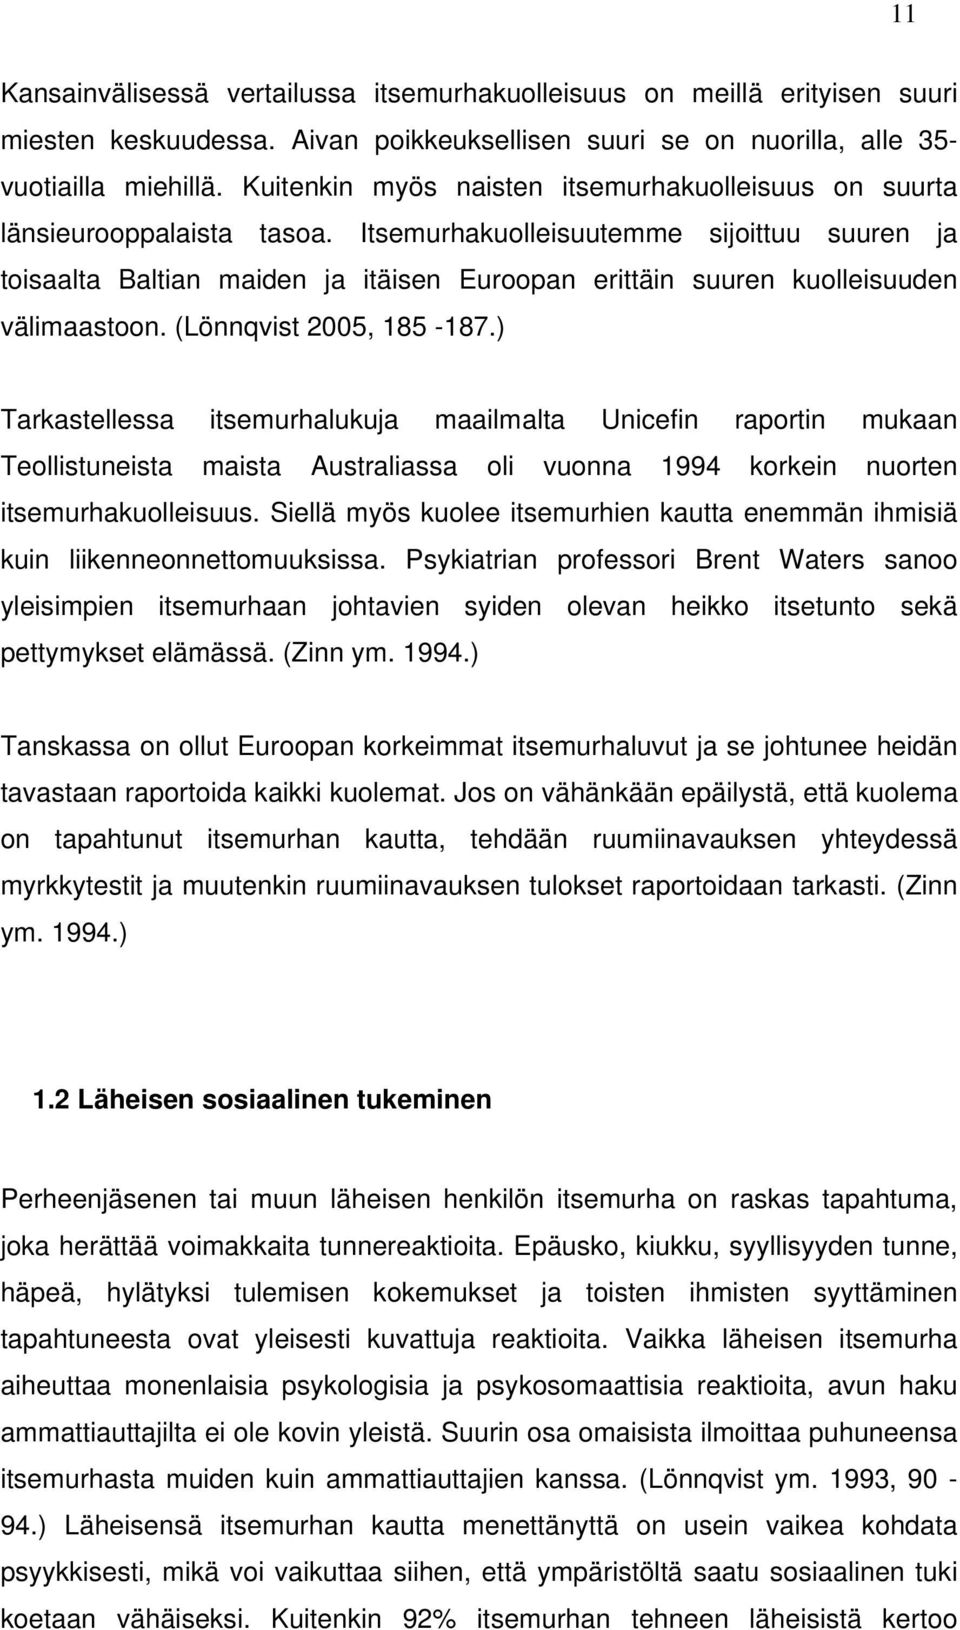 Itsemurhakuolleisuutemme sijoittuu suuren ja toisaalta Baltian maiden ja itäisen Euroopan erittäin suuren kuolleisuuden välimaastoon. (Lönnqvist 2005, 185-187.